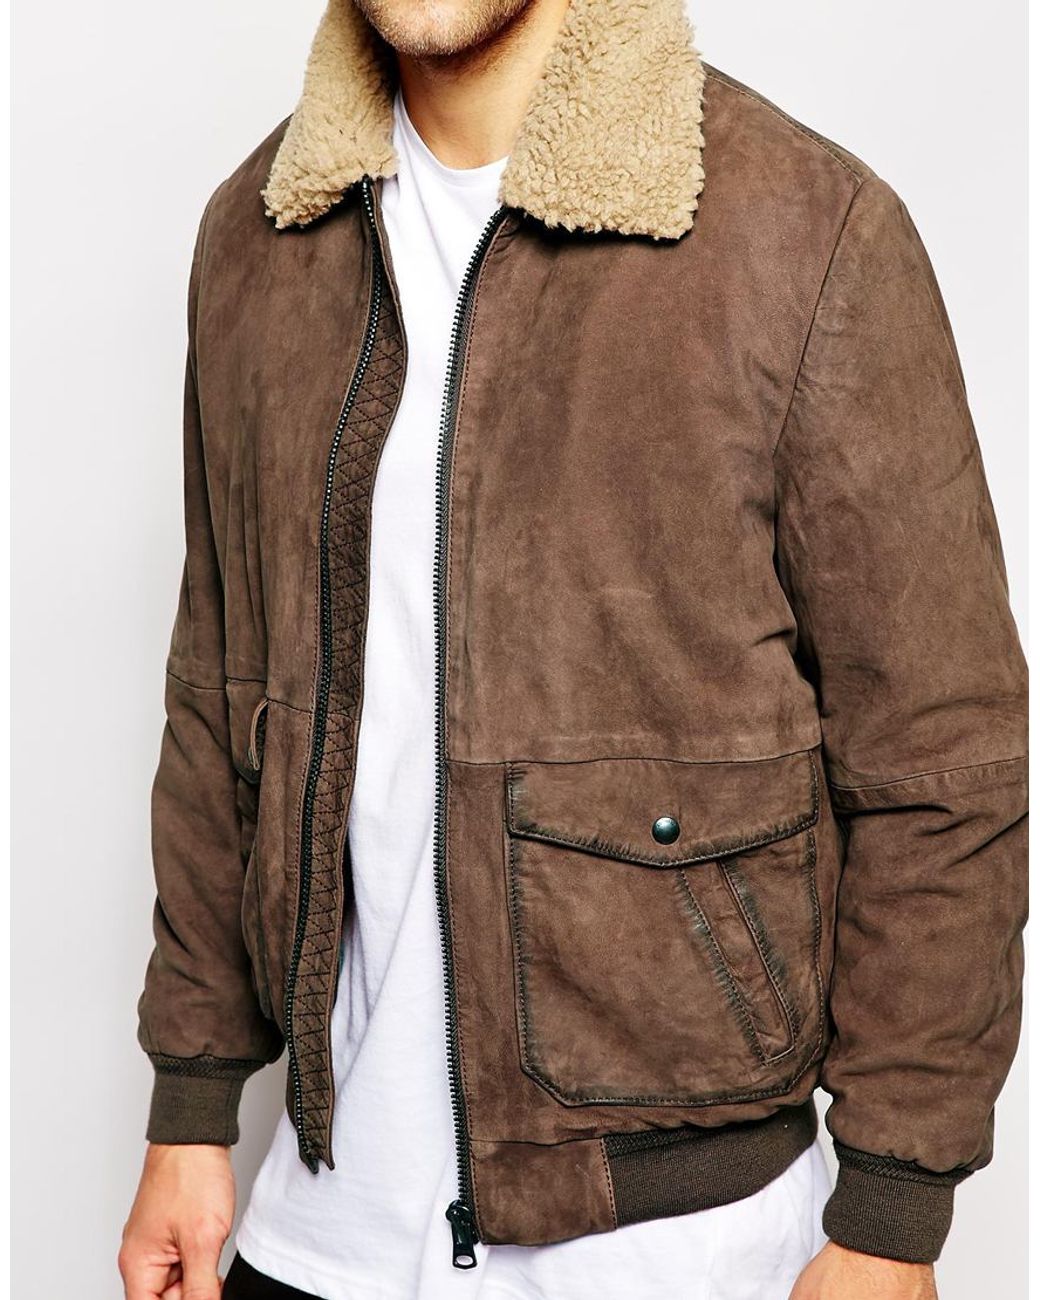 Arriba 33+ imagen wrangler brown leather jacket - Thptnganamst.edu.vn